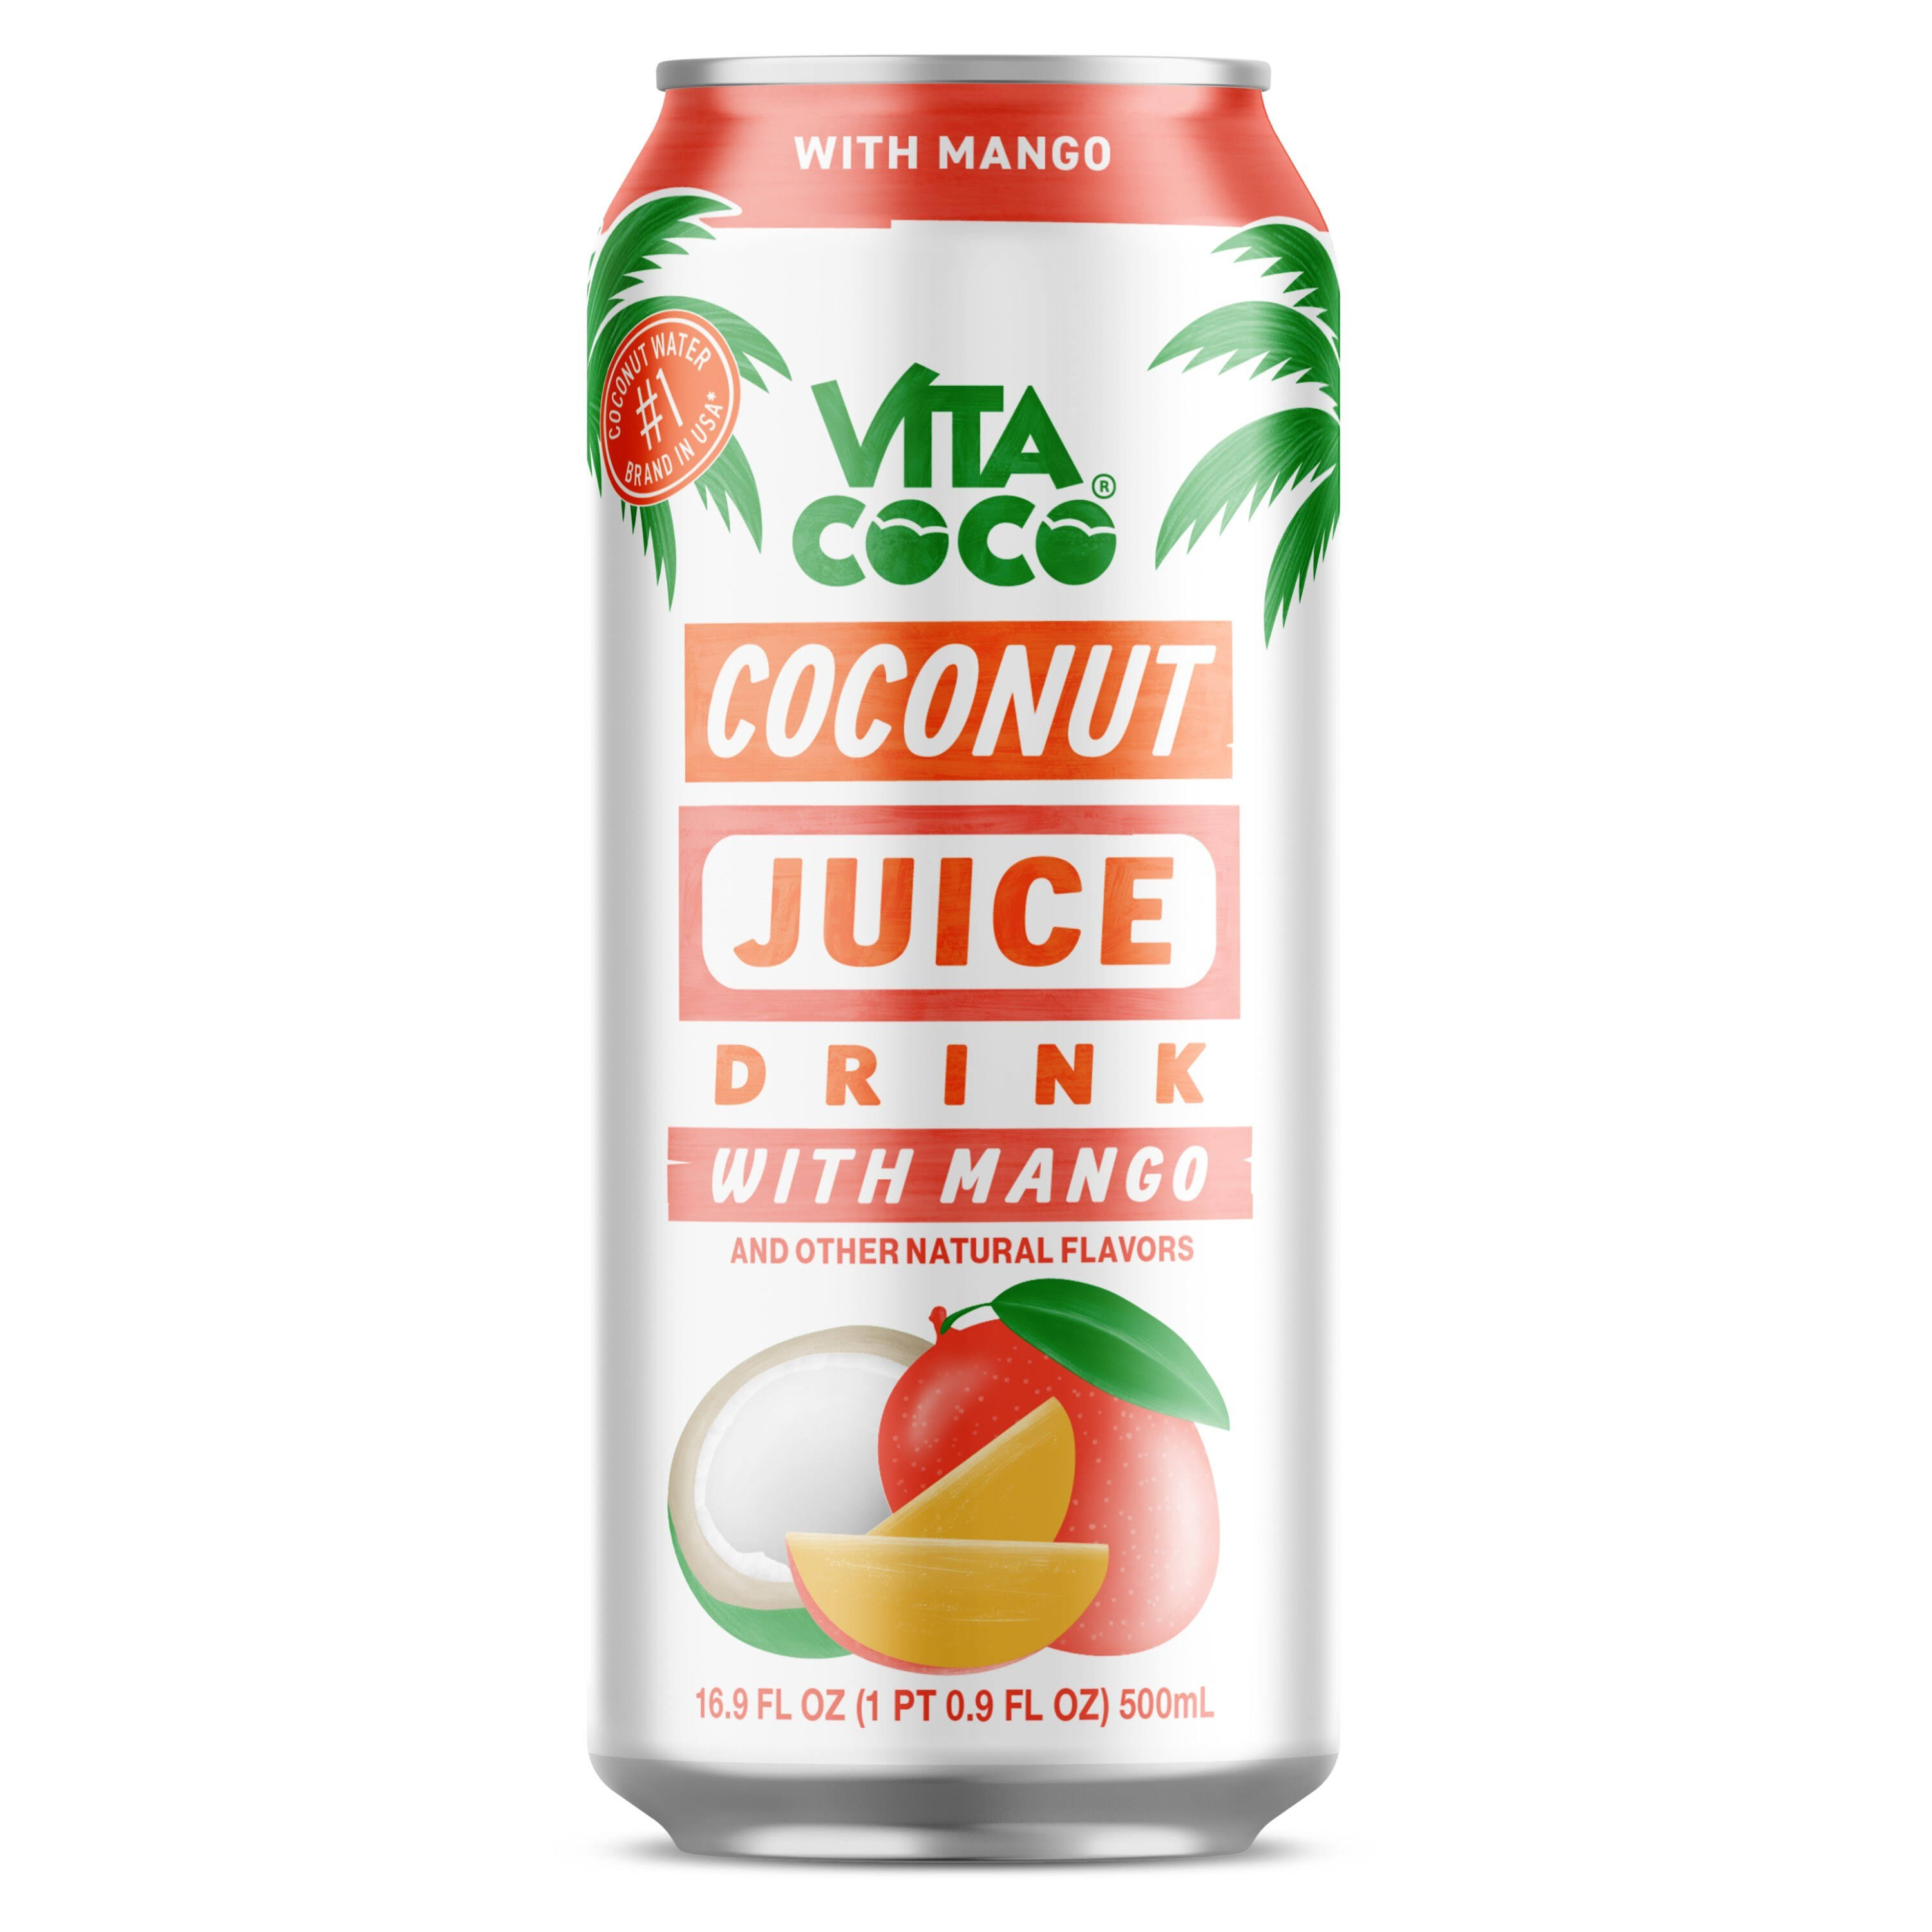 Vita Coco Coconut Juice Drink with Mango 16.9 oz